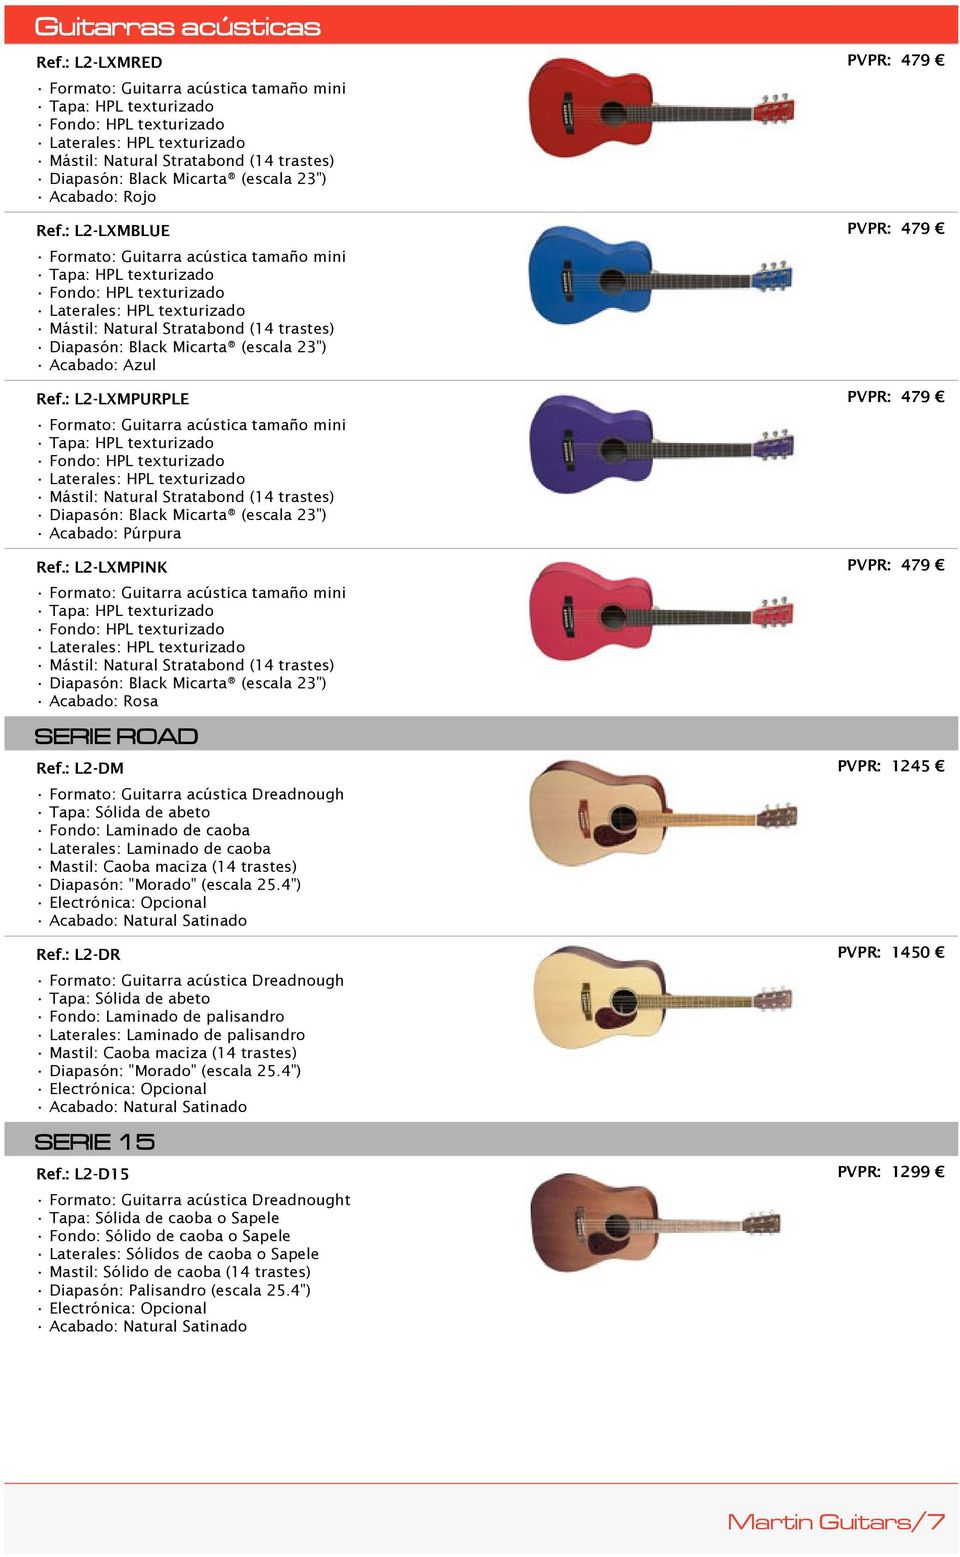 : L2-LXMBLUE Formato: Guitarra acústica tamaño mini Tapa: HPL texturizado Fondo: HPL texturizado Laterales: HPL texturizado Mástil: Natural Stratabond (14 trastes) Diapasón: Black Micarta (escala